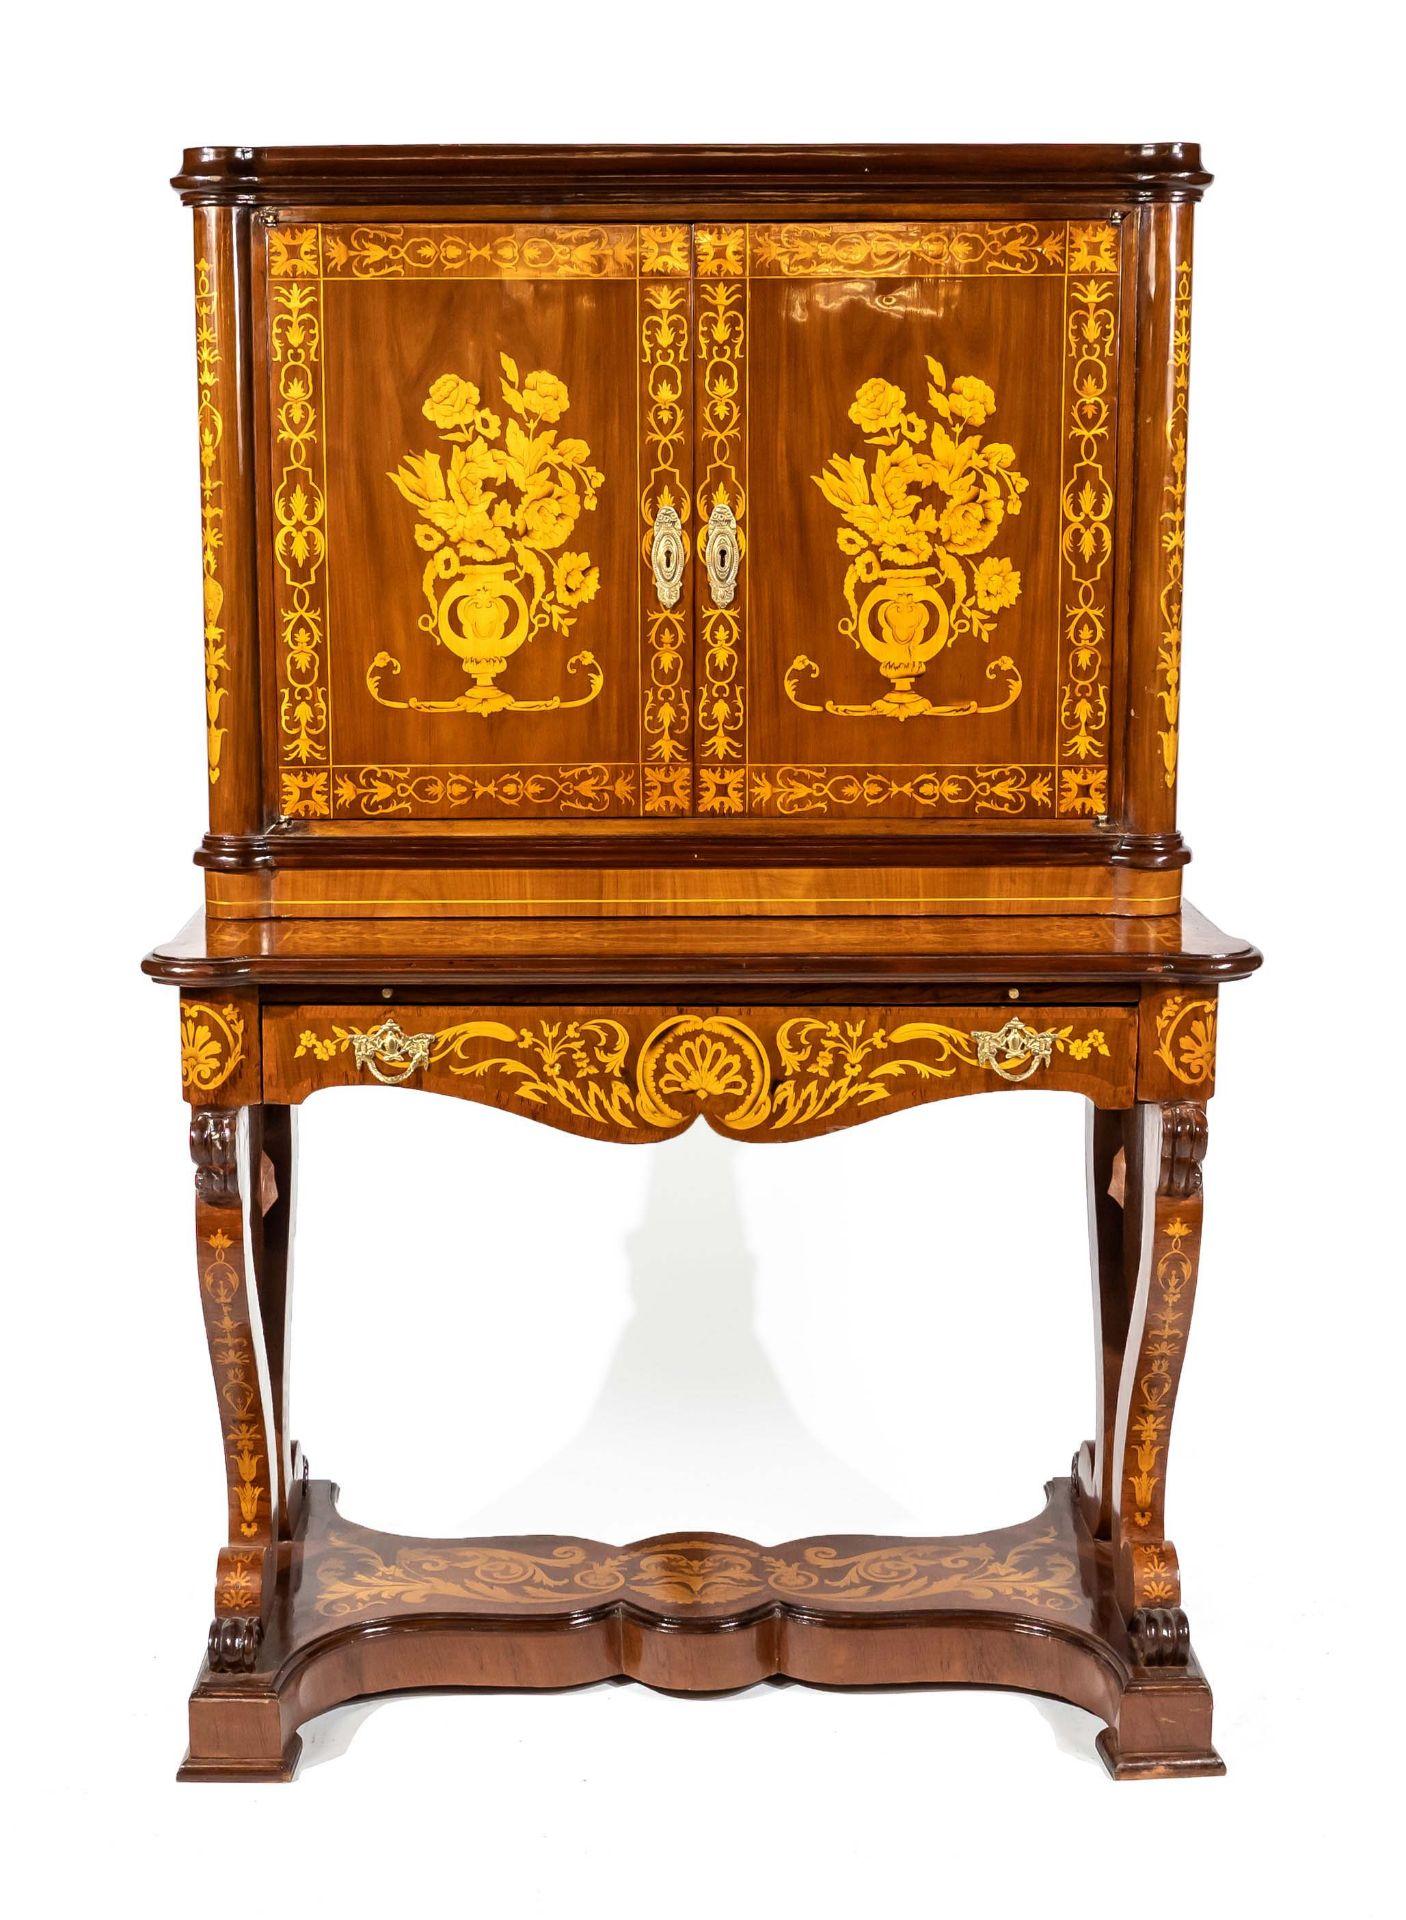 Decorative inlaid writing cabinet in the style of the Italian ebenist Giovanni Battista Gatti,